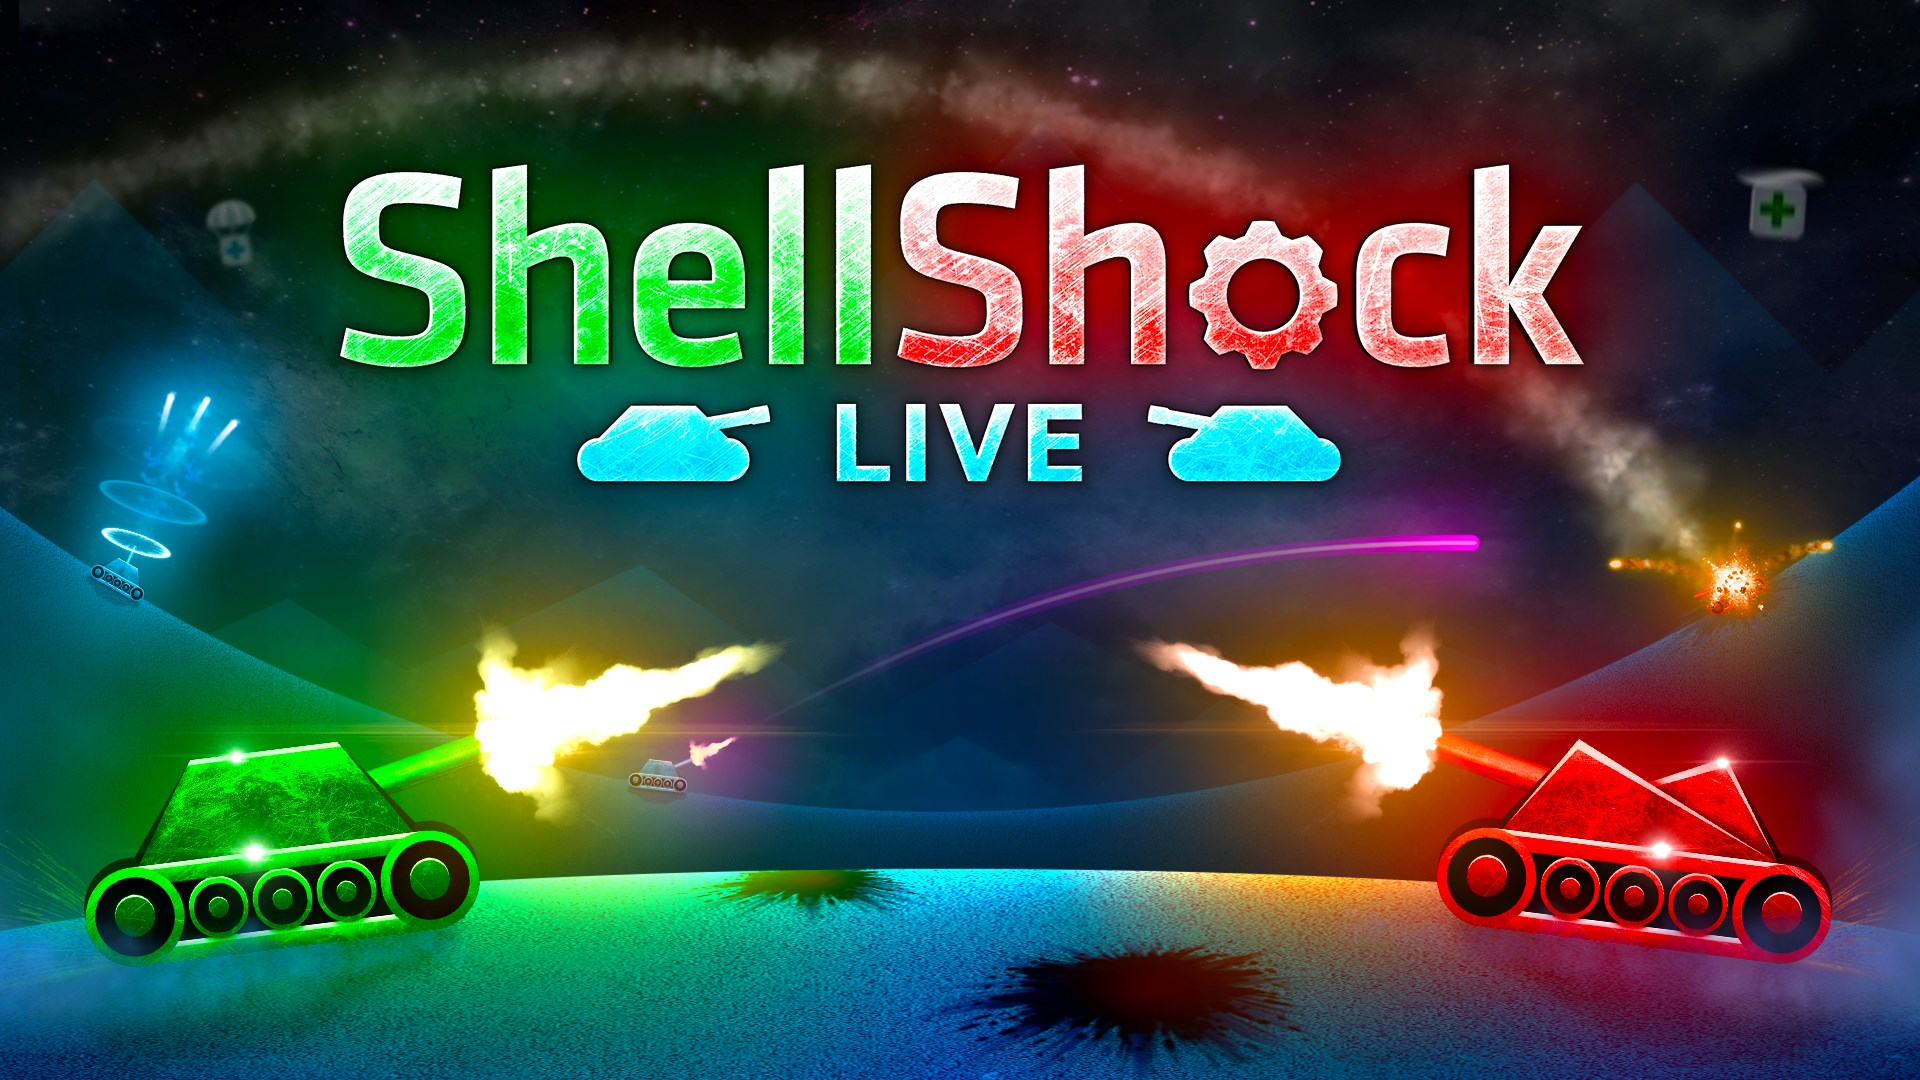 Two Birds achievement in ShellShock Live